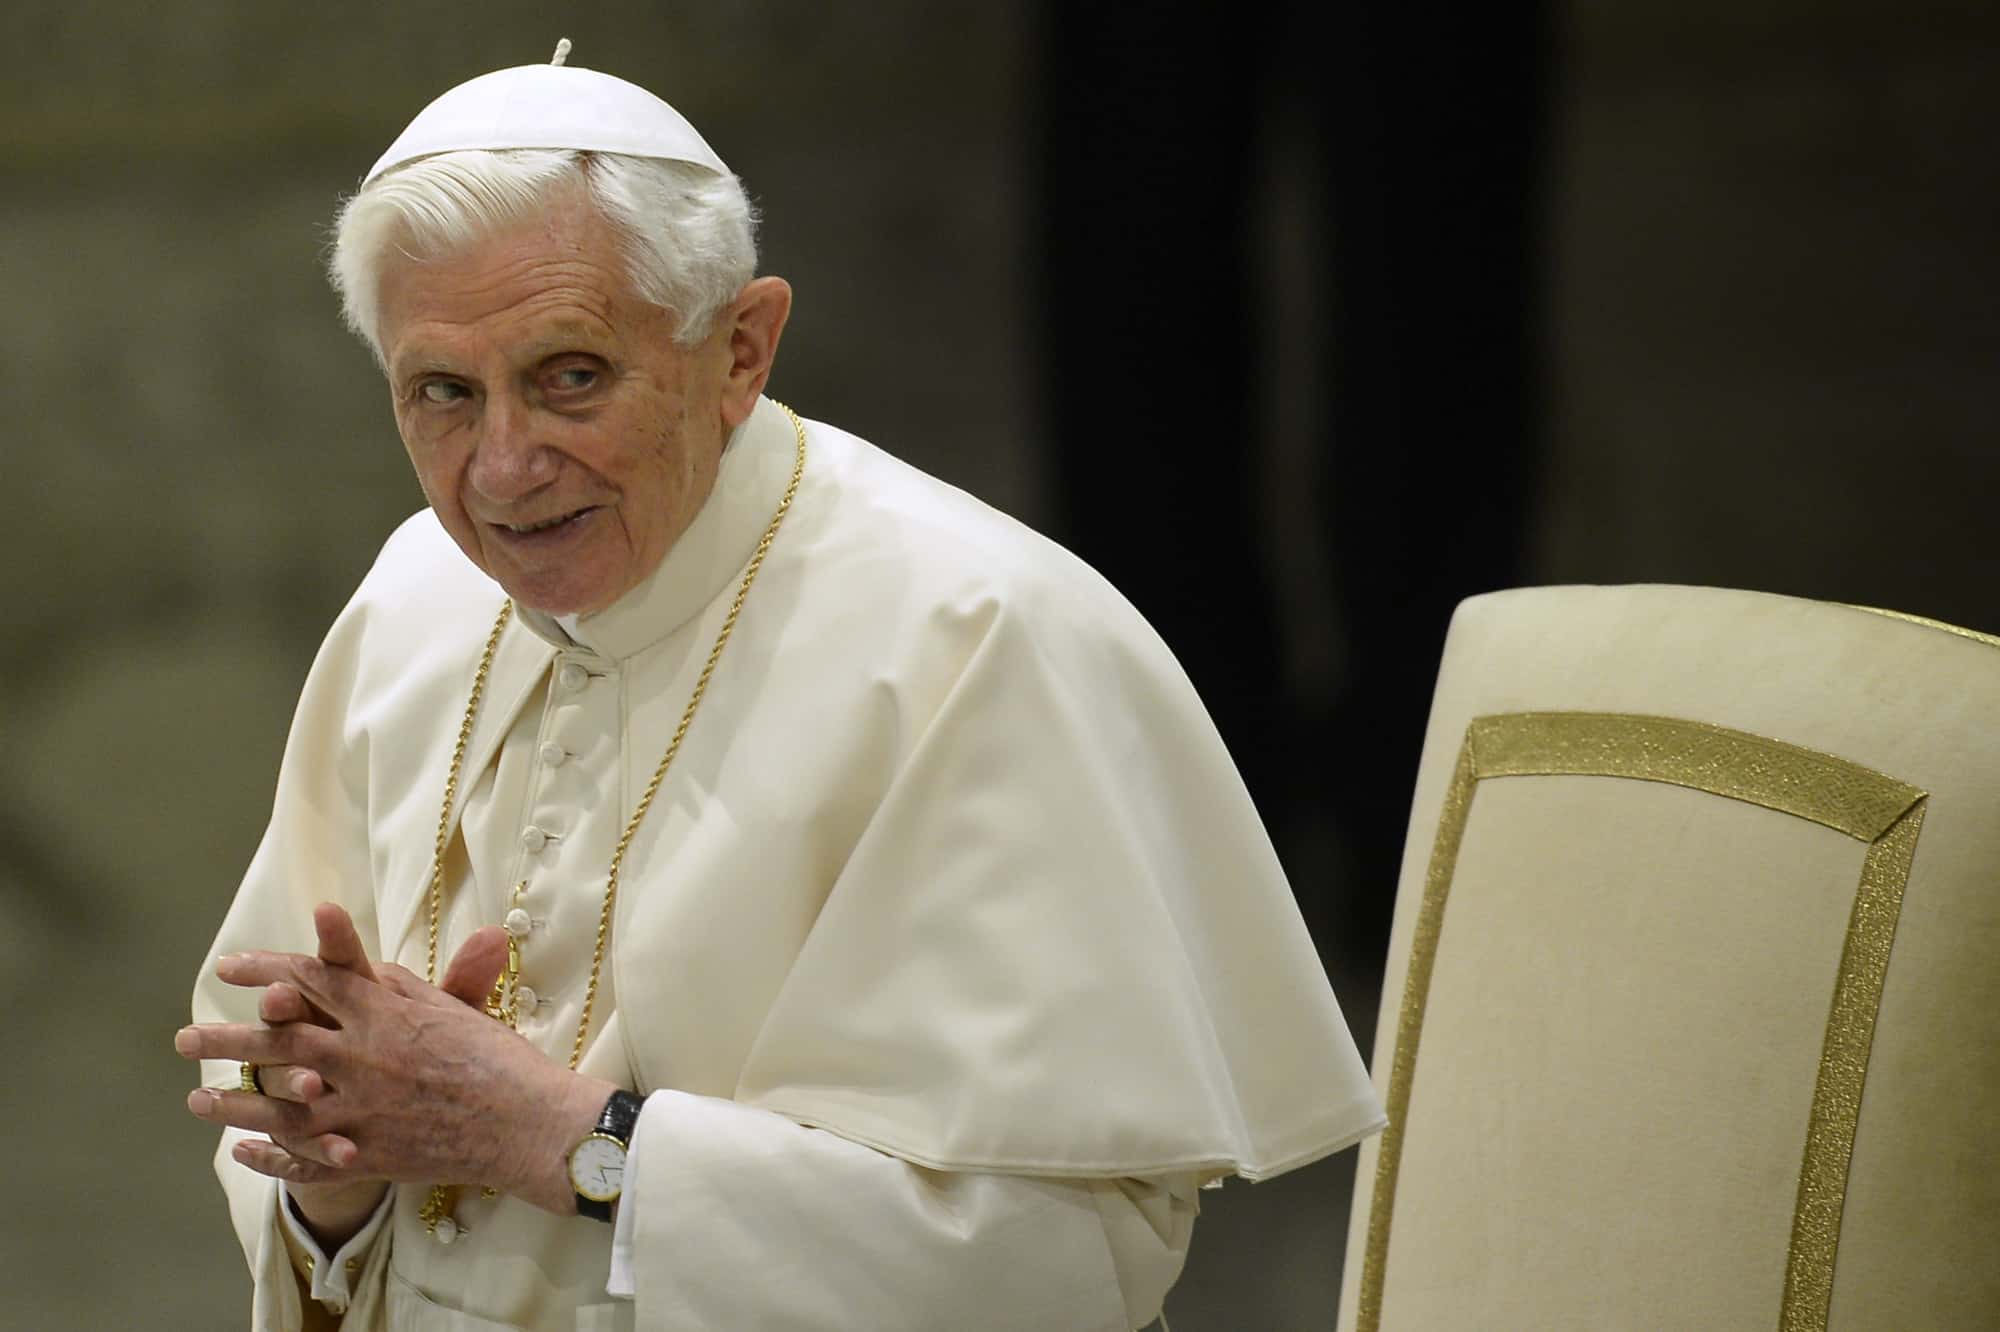 El Papa Benedicto XVI tiene lugar para su audiencia general semanal el 13 de febrero de 2013 en el Aula Pablo VI en el Vaticano. El Papa Benedicto XVI hizo su primera aparición pública el miércoles desde el impactante anuncio de su renuncia, cumpliendo con su agenda al presidir su audiencia general semanal.